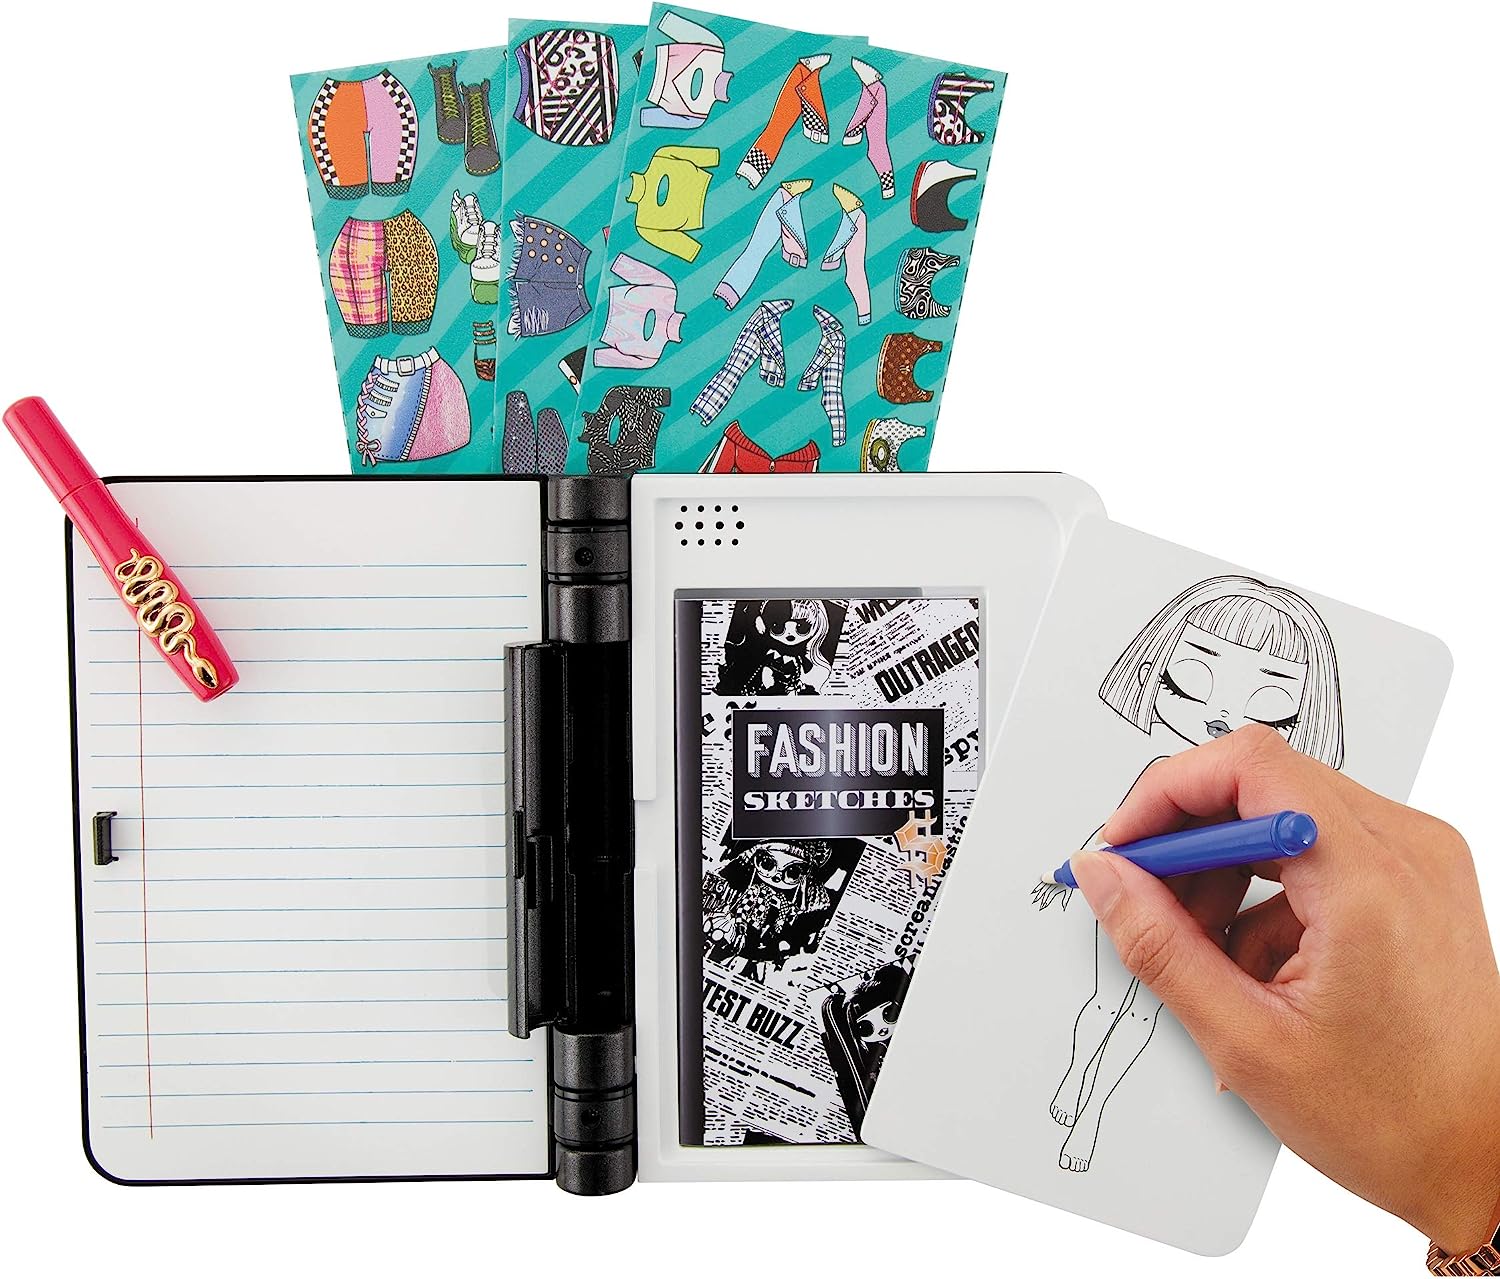 エルオーエルサプライズ 人形 ドール LOL Surprise OMG Fashion Journal ? Secret Electronic Password Journal Notebook with Real Watch & Invisible Ink Pen Storage of Secret Diary Cute Journal for Girlsエルオーエルサプライズ 人形 ドール 2